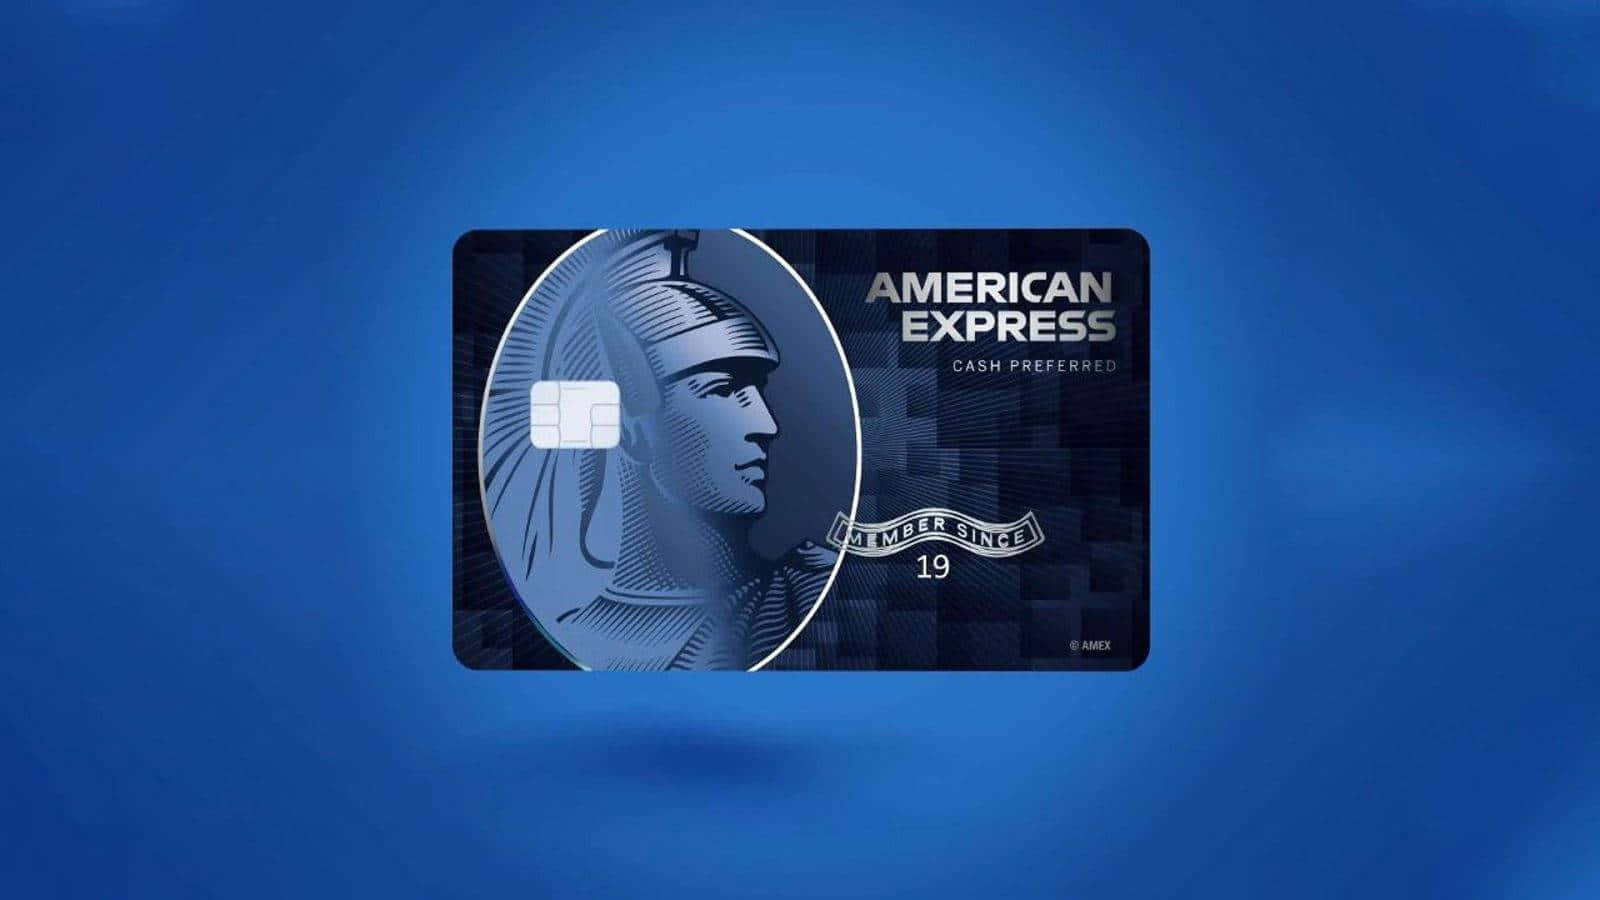 Erhaltensie Das Beste Aus Ihrem Finanziellen Erlebnis Mit American Express.